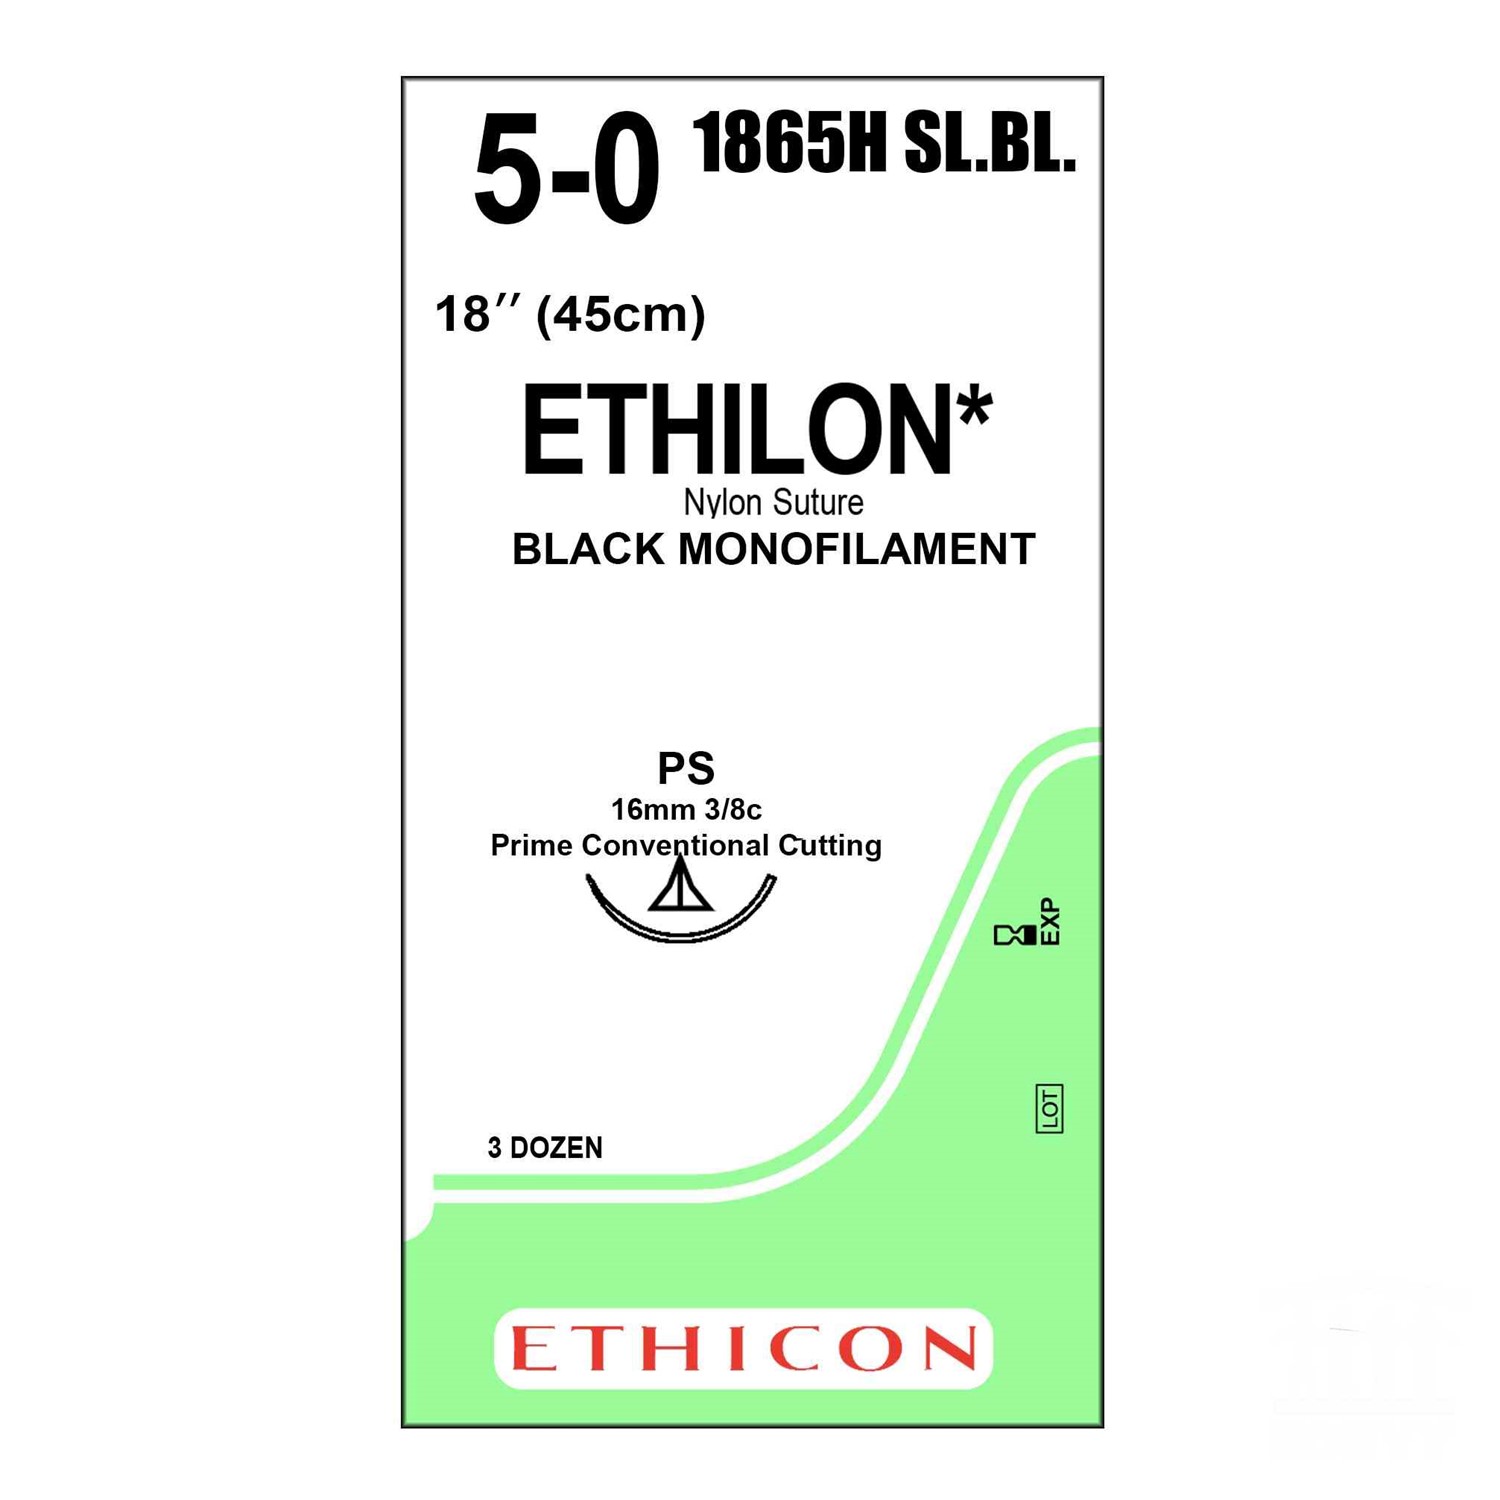 Ράμμα Ethilon No 5/0 με βελόνα 16mm Κόπτουσα Πλαστικής P 3/8 κύκλου Multipass χρώματος μαύρου(Slim Blade),μήκος ράμματος 45cm